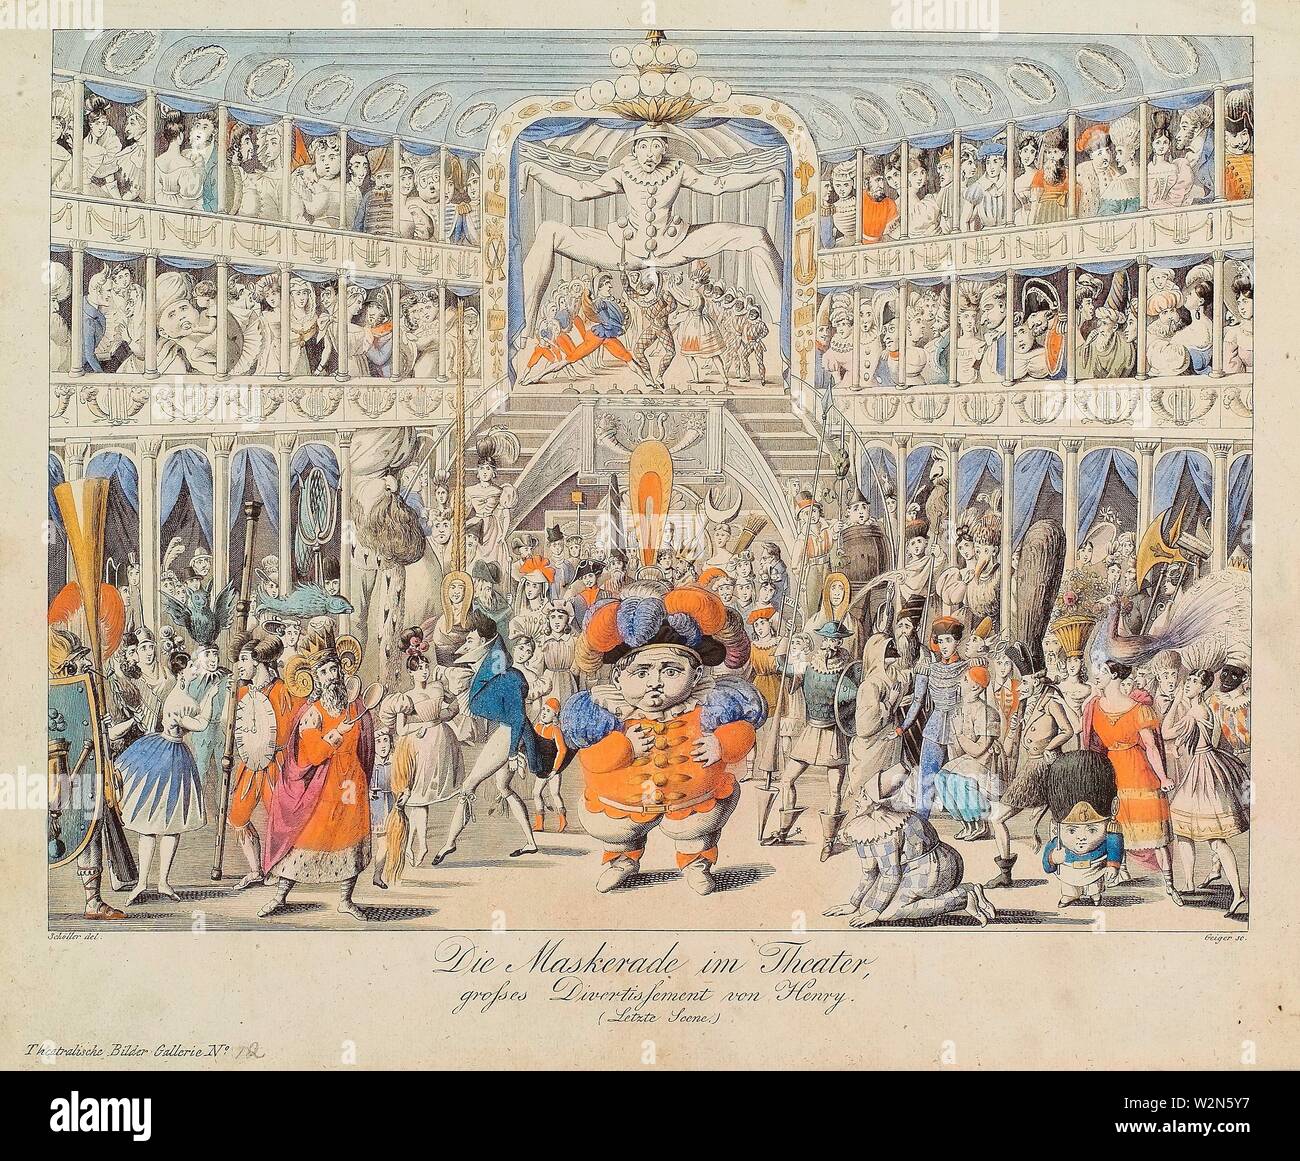 Die im Maskerade Theatre, grosses Divertissement von Henry (letzte scena). Geiger, Andreas, 1765-1856 (incisore) Schoeller, Johann Christian, Foto Stock